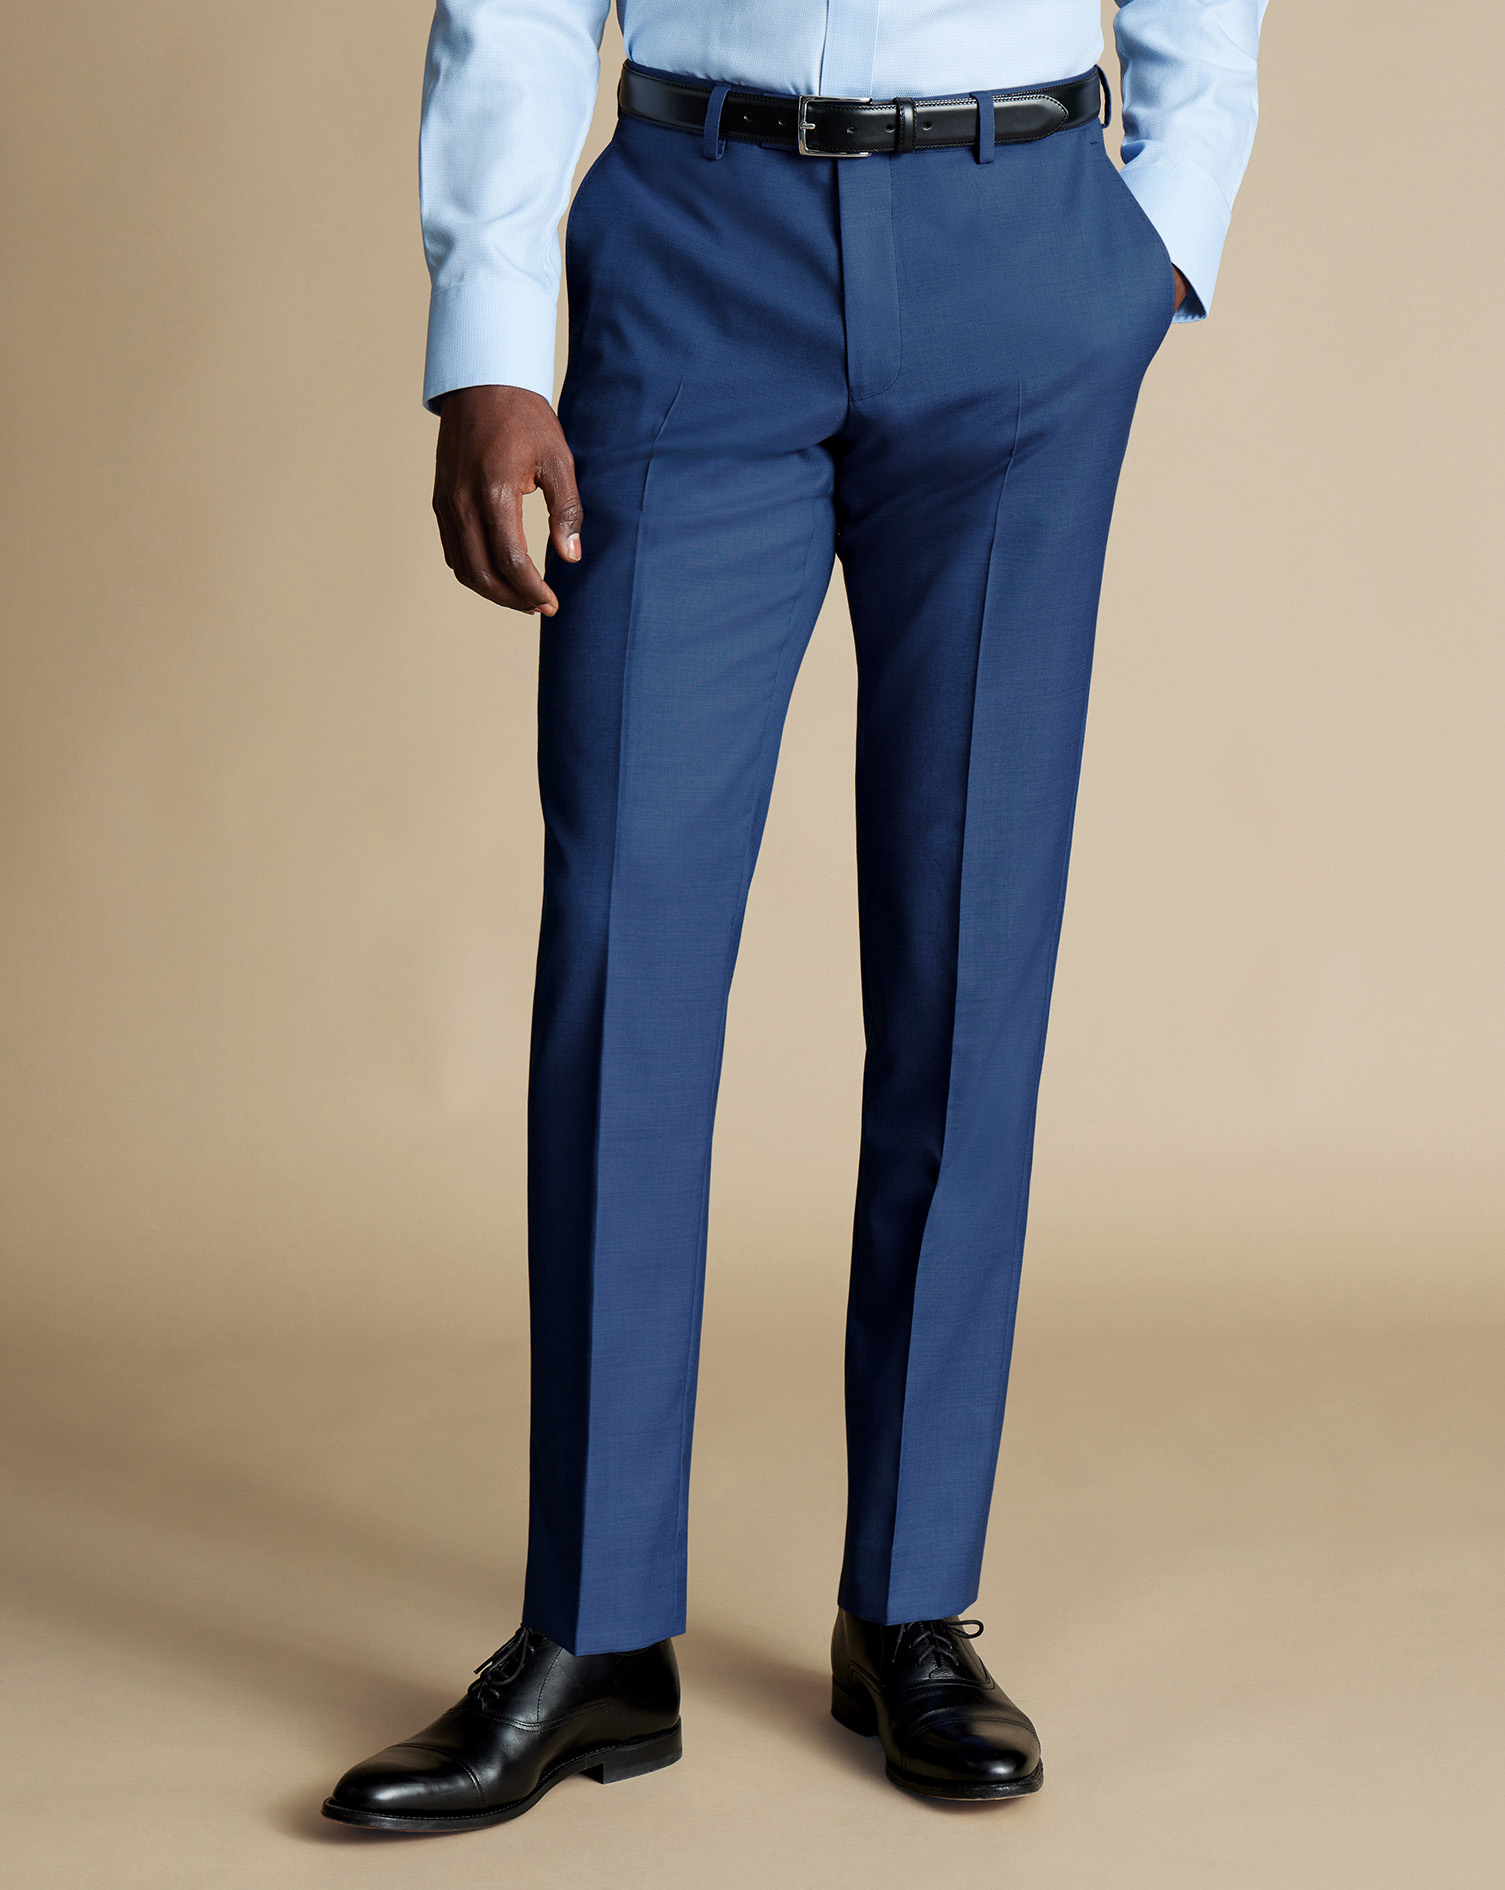 Men's Charles Tyrwhitt Ultimate Performance Sharkskin Suit Trousers - Indigo Blue Size 30/38
